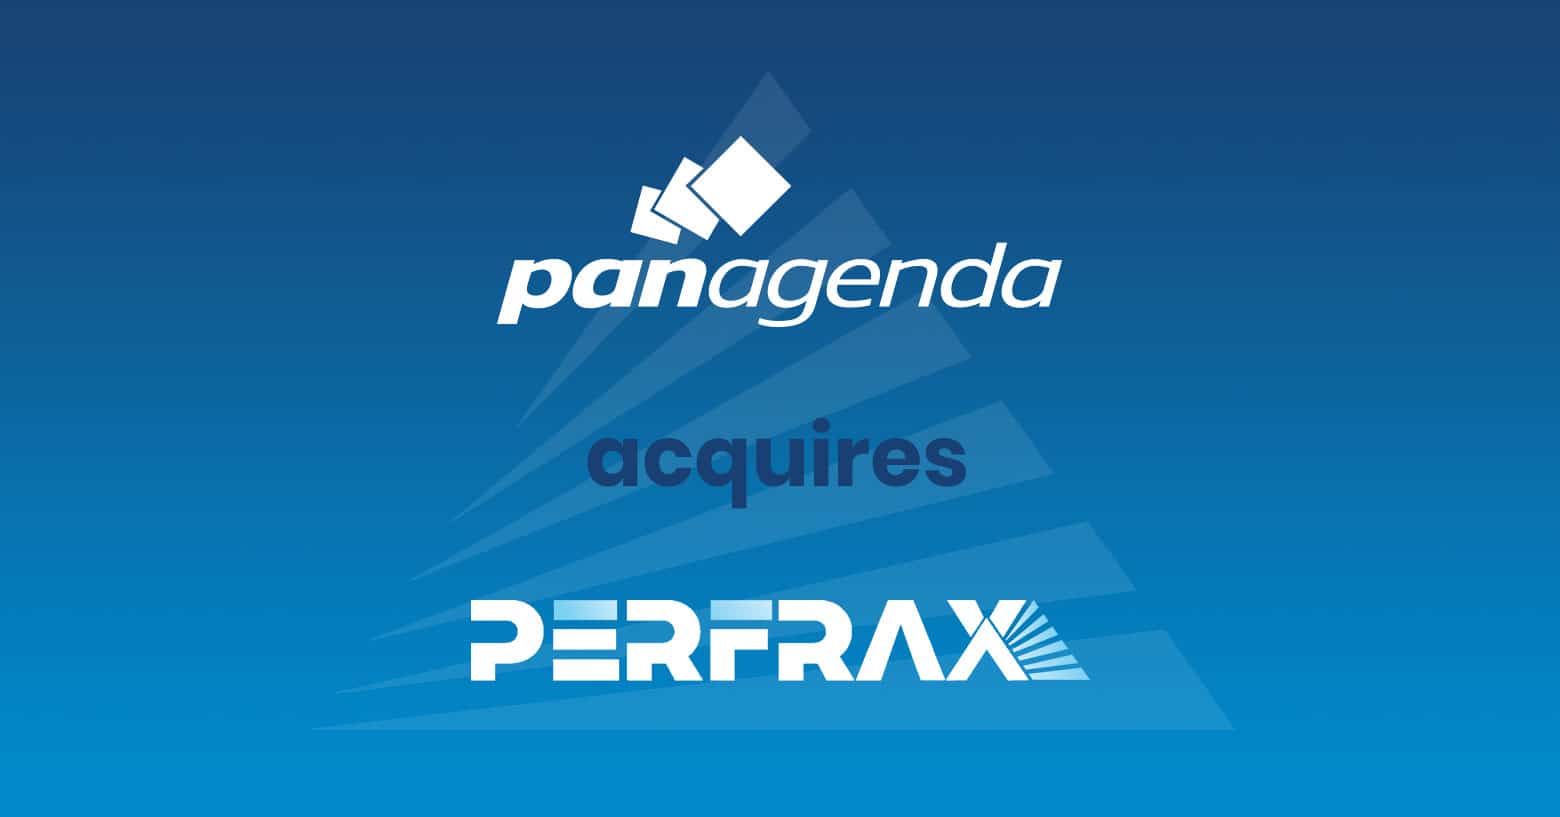 panagenda übernimmt Perfrax: Entwickler von bahnbrechendem User Experience Monitoring und Microsoft Teams Call Quality Analytics